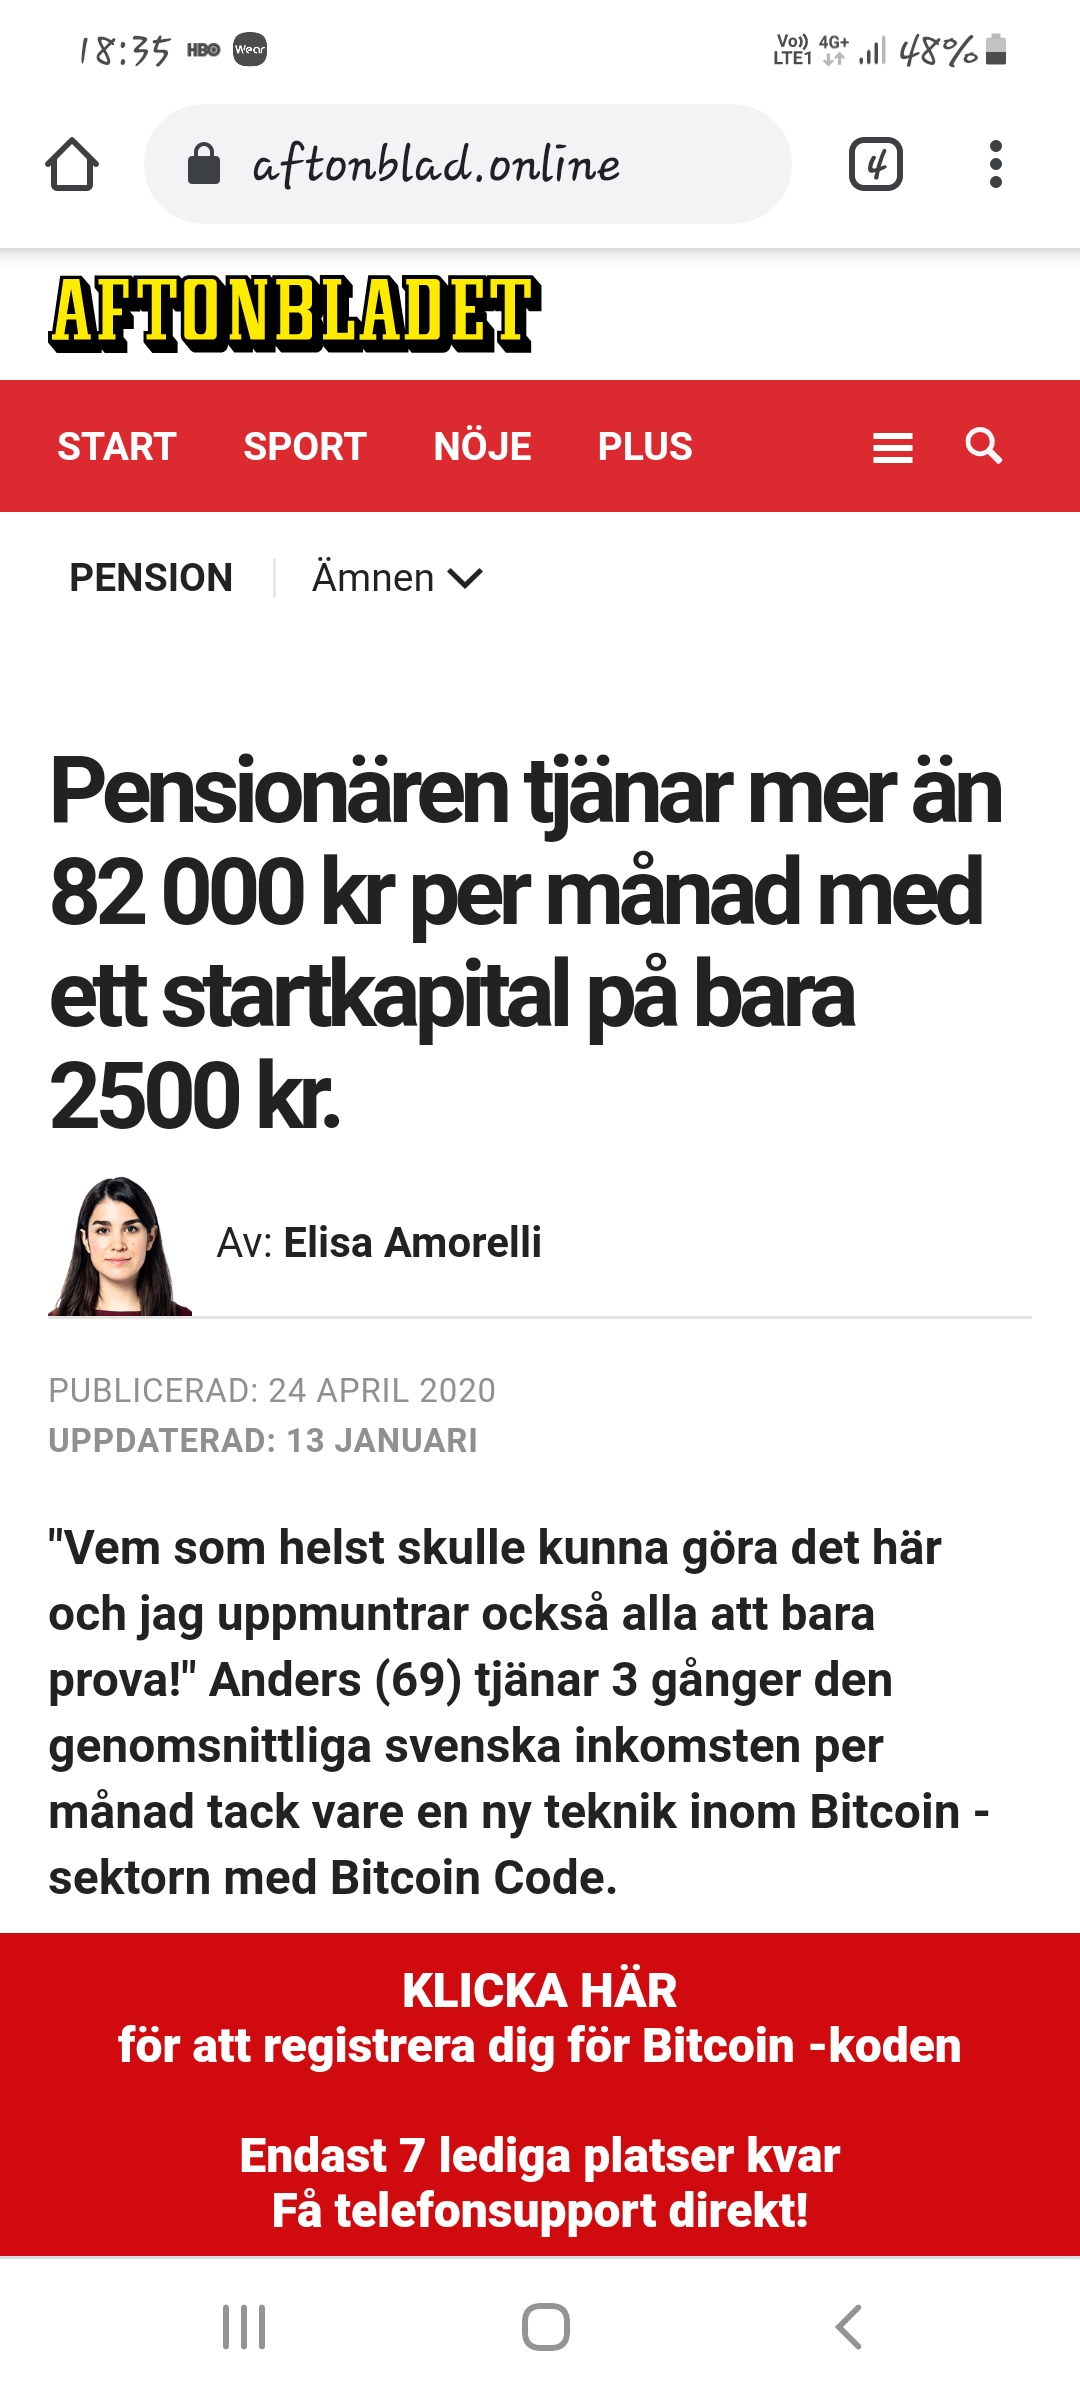 Länken kan peka till en fejksida som ser ut att komma från Aftonbladet.